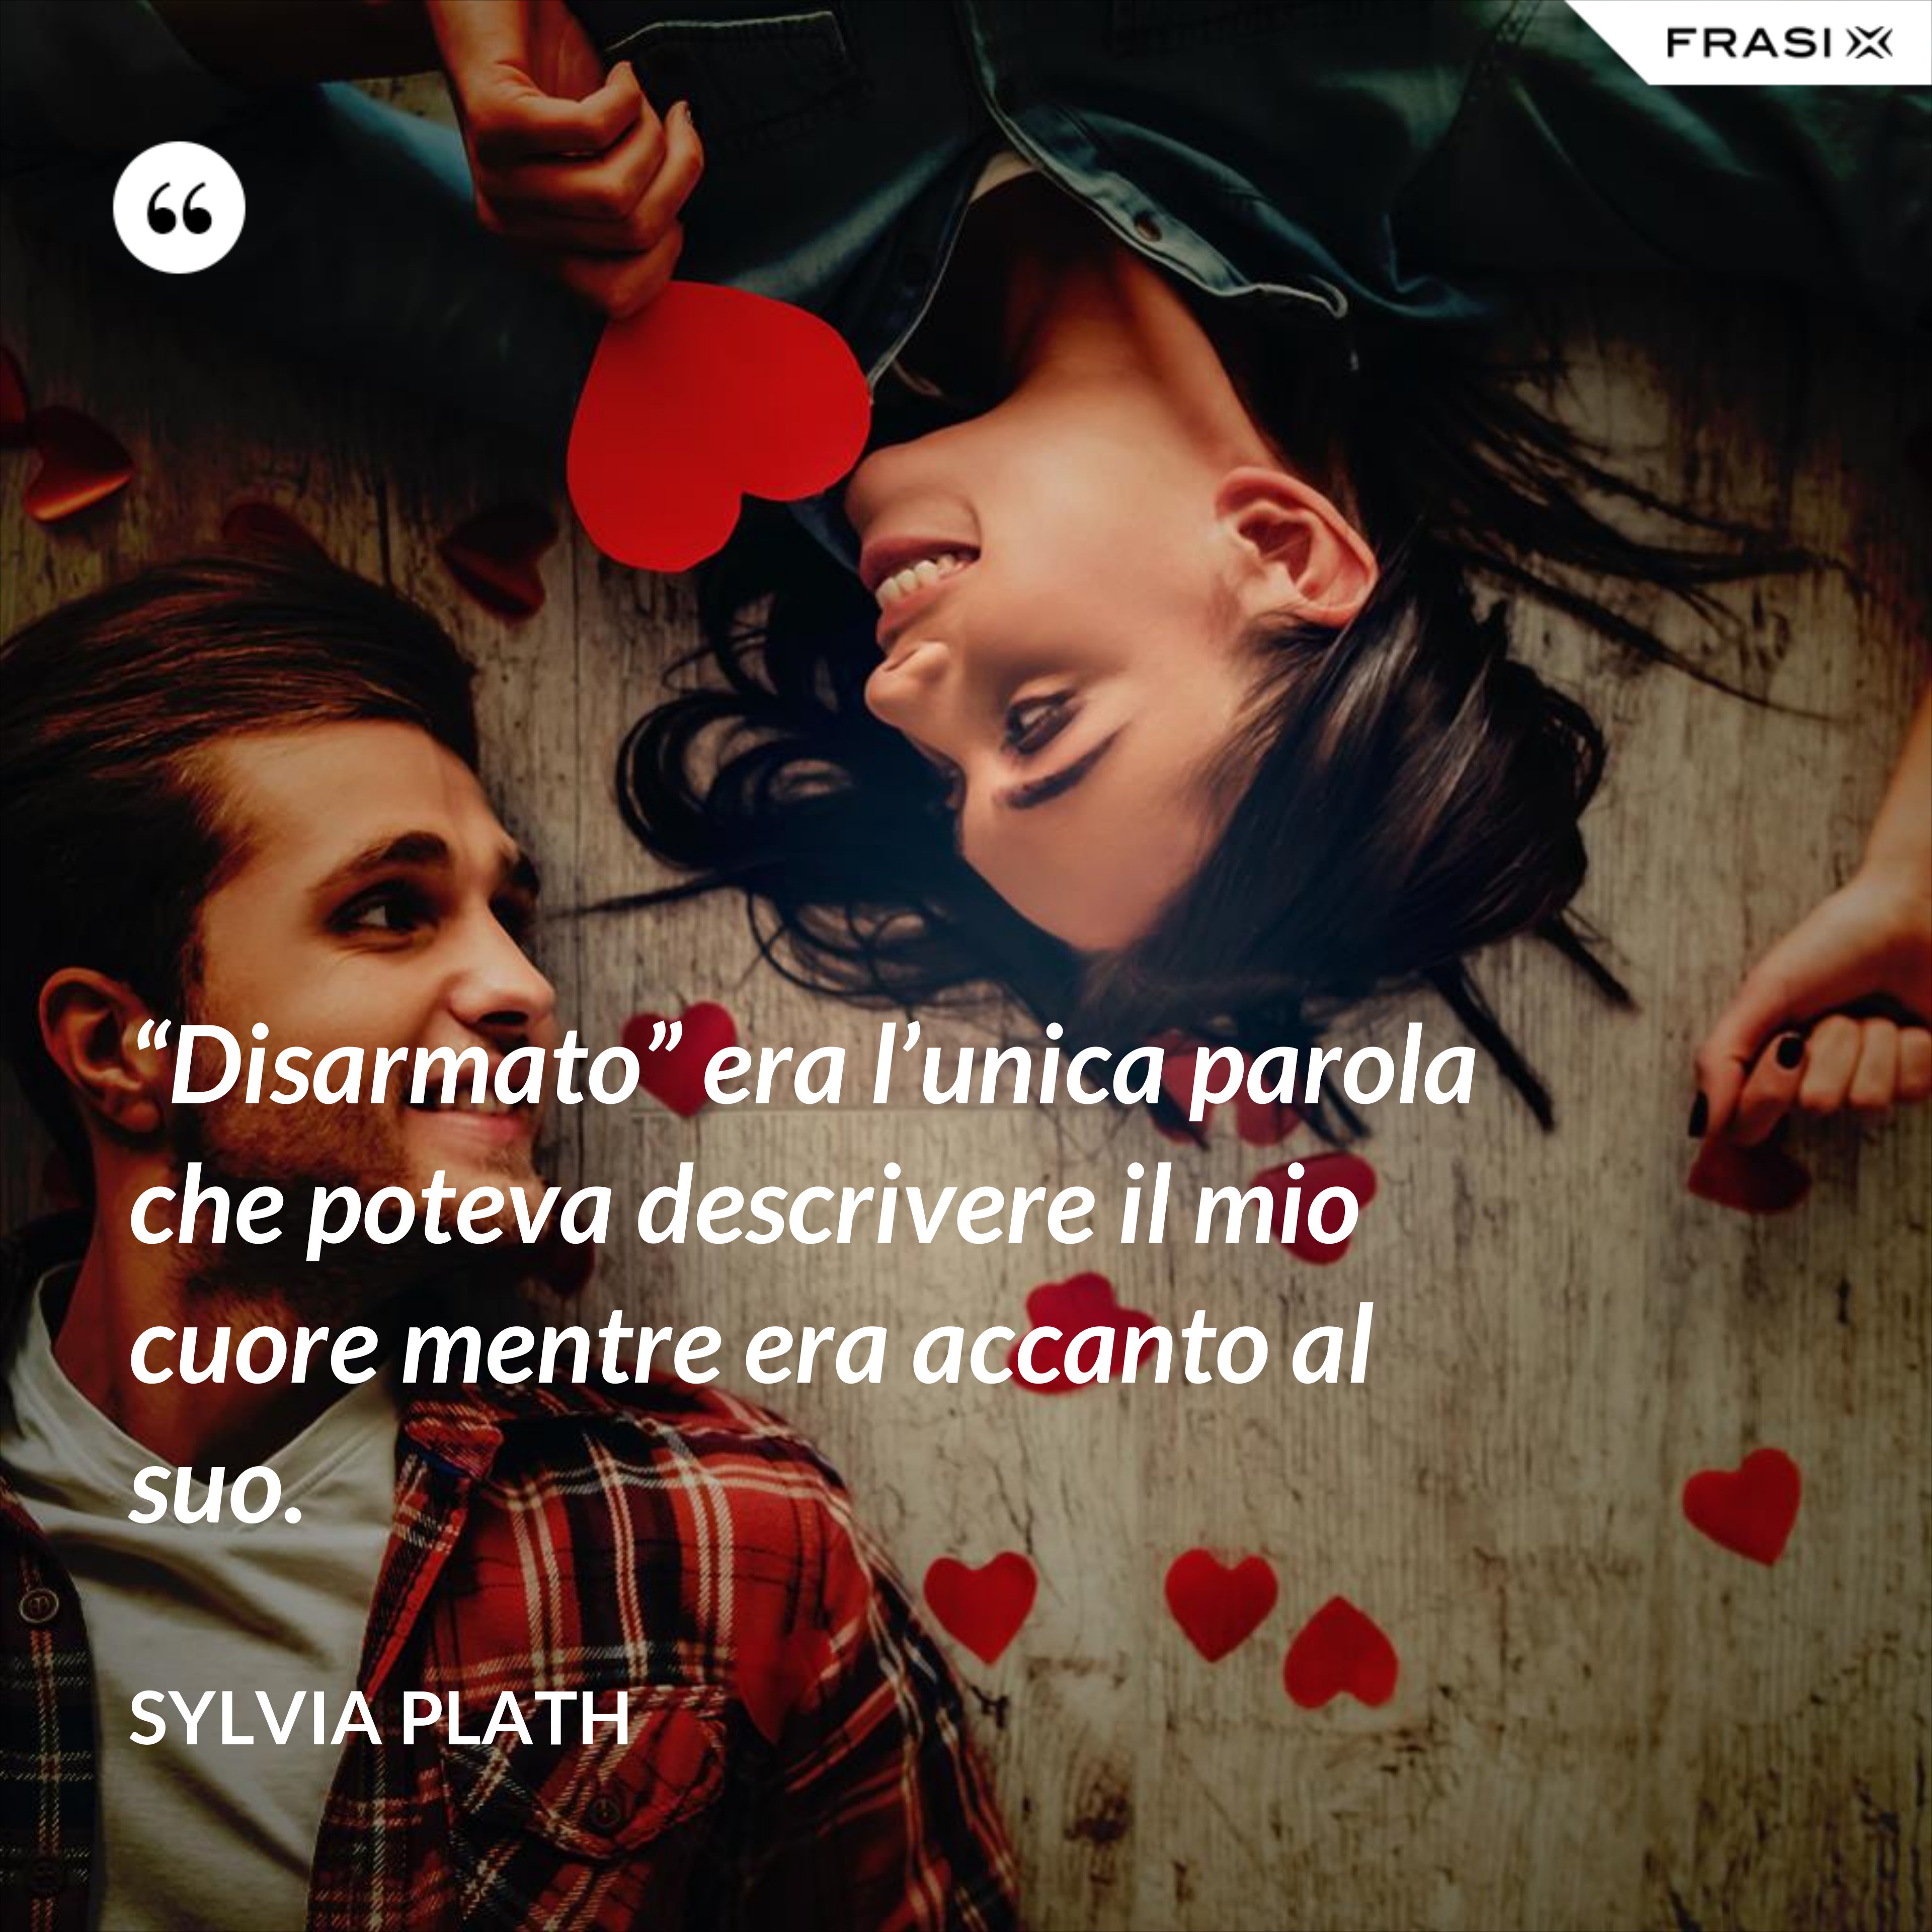 “Disarmato” era l’unica parola che poteva descrivere il mio cuore mentre era accanto al suo. - Sylvia Plath